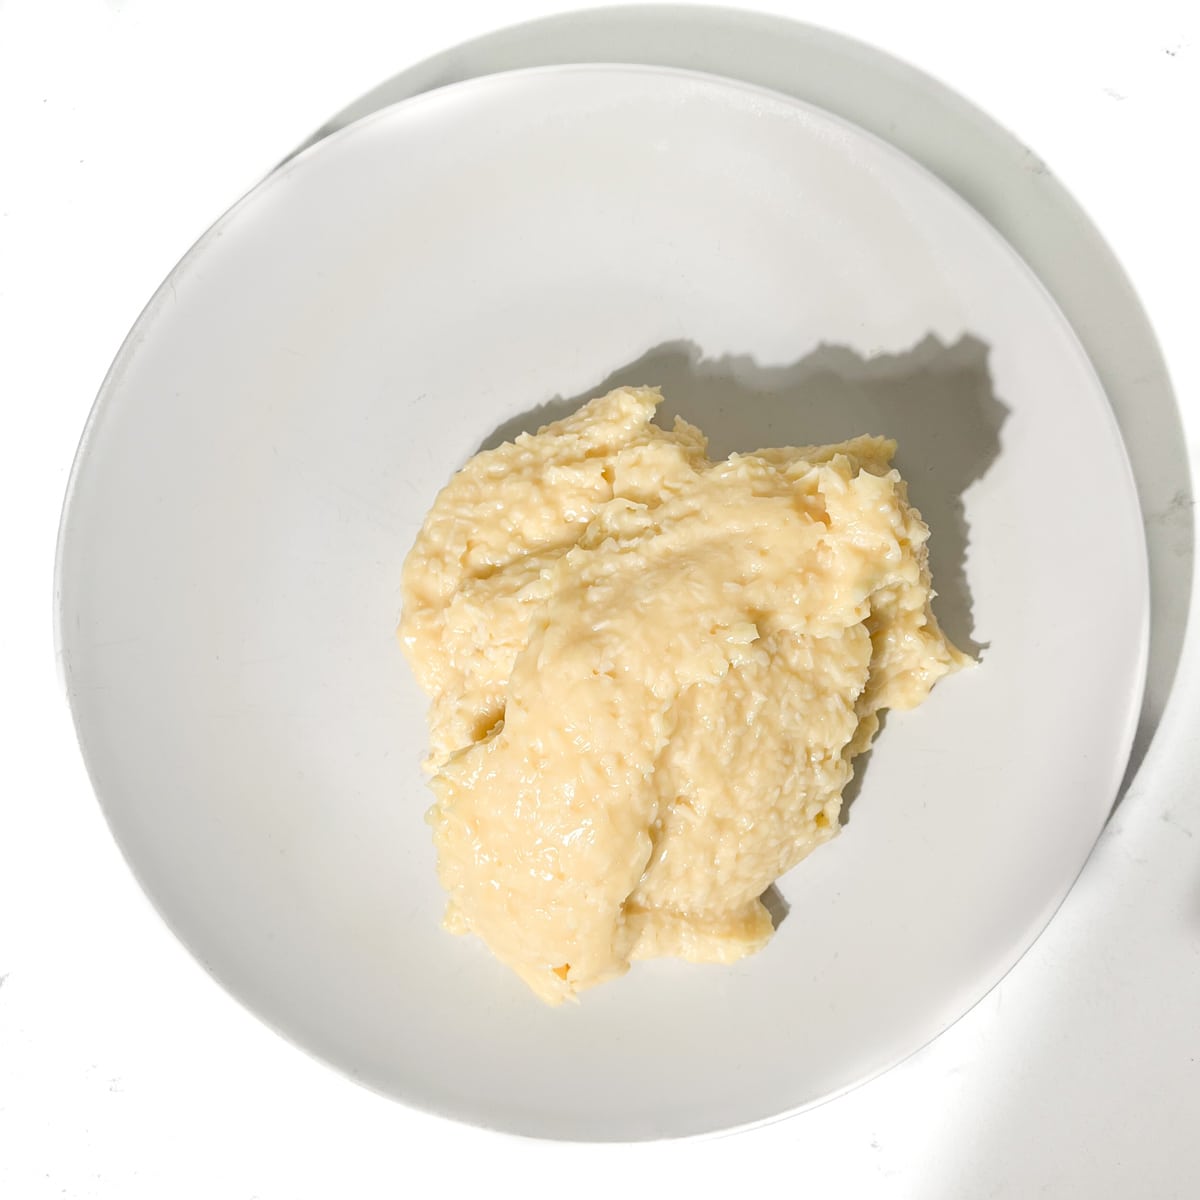 The beijinhos mixture on a buttered plate.